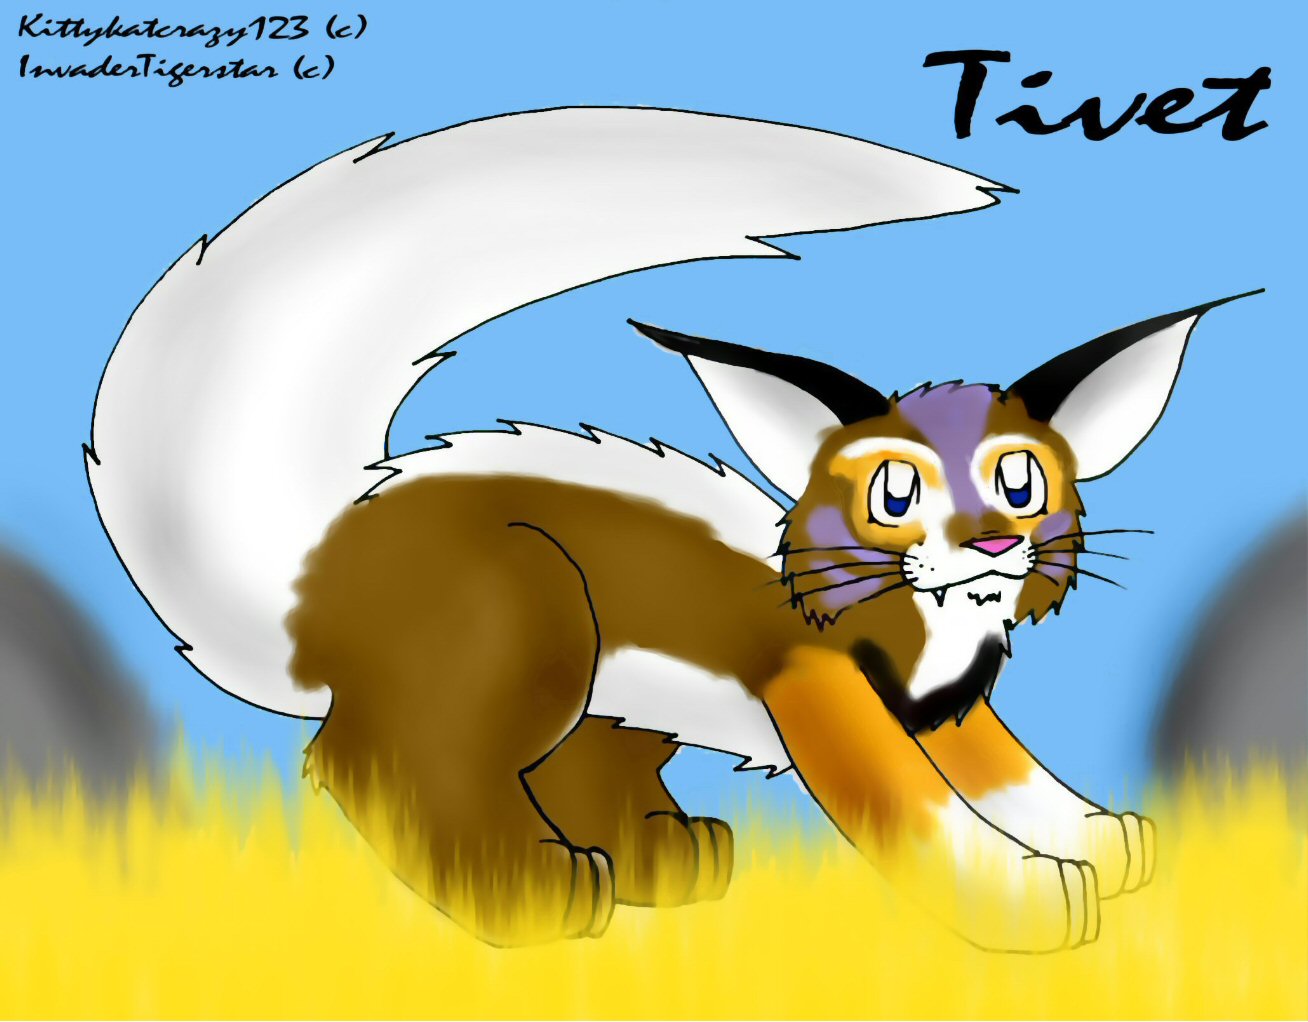 Tivet the liger by kittykatcrazy123